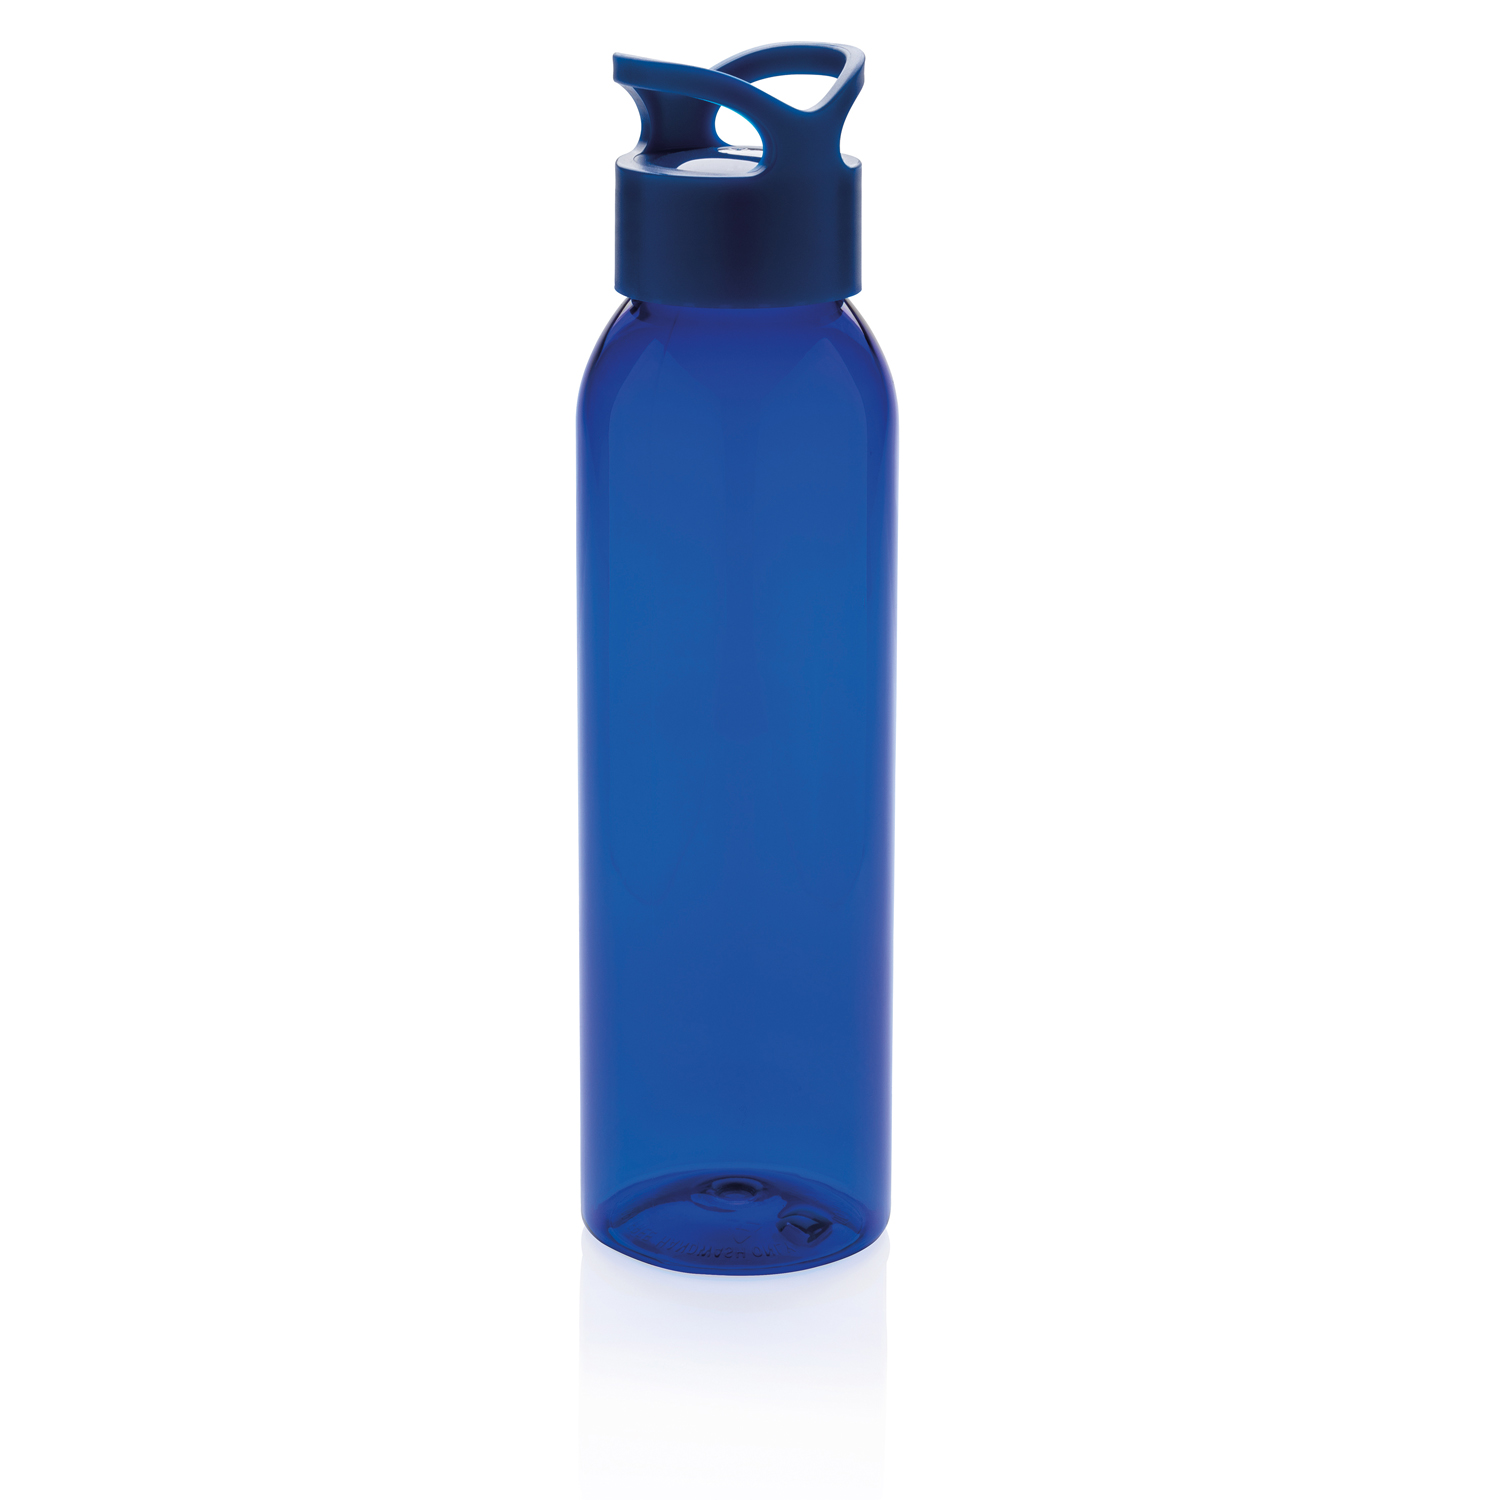 Аквафор бутылка для воды. Бутылка для воды. Пластиковая бутылка для воды. Синяя вода в бутылке. Бутылка для воды спортивная синяя.